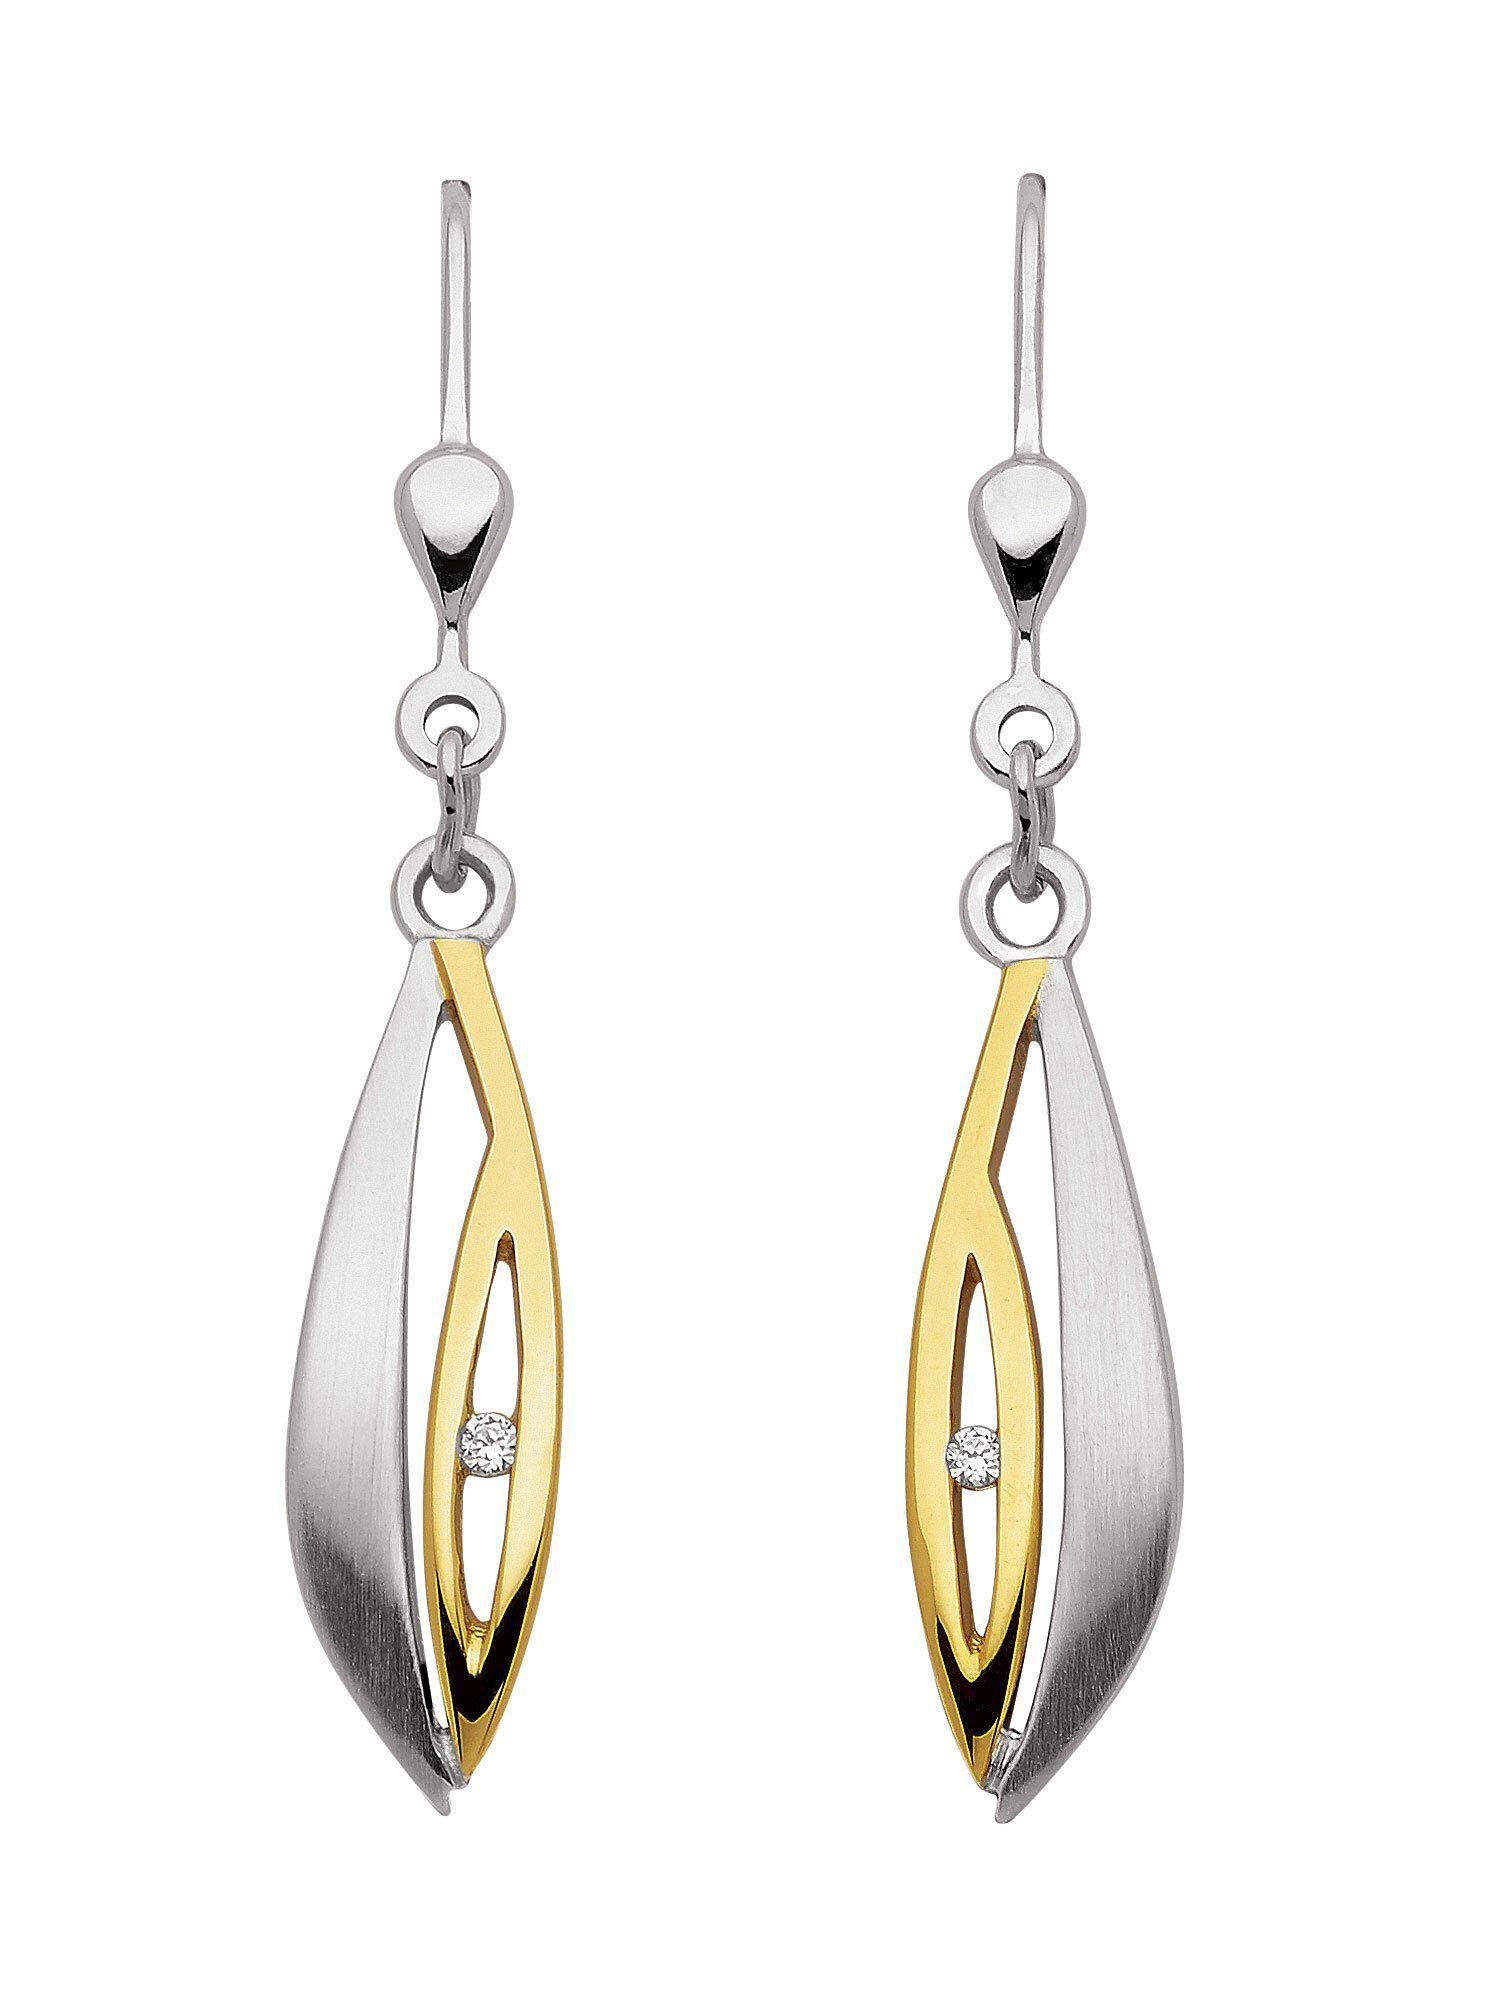 Damen Schmuck Adelia´s Paar Ohrhänger 1 Paar 925 Silber Ohrringe / Ohrhänger mit Zirkonia, 925 Sterling Silber Silberschmuck für